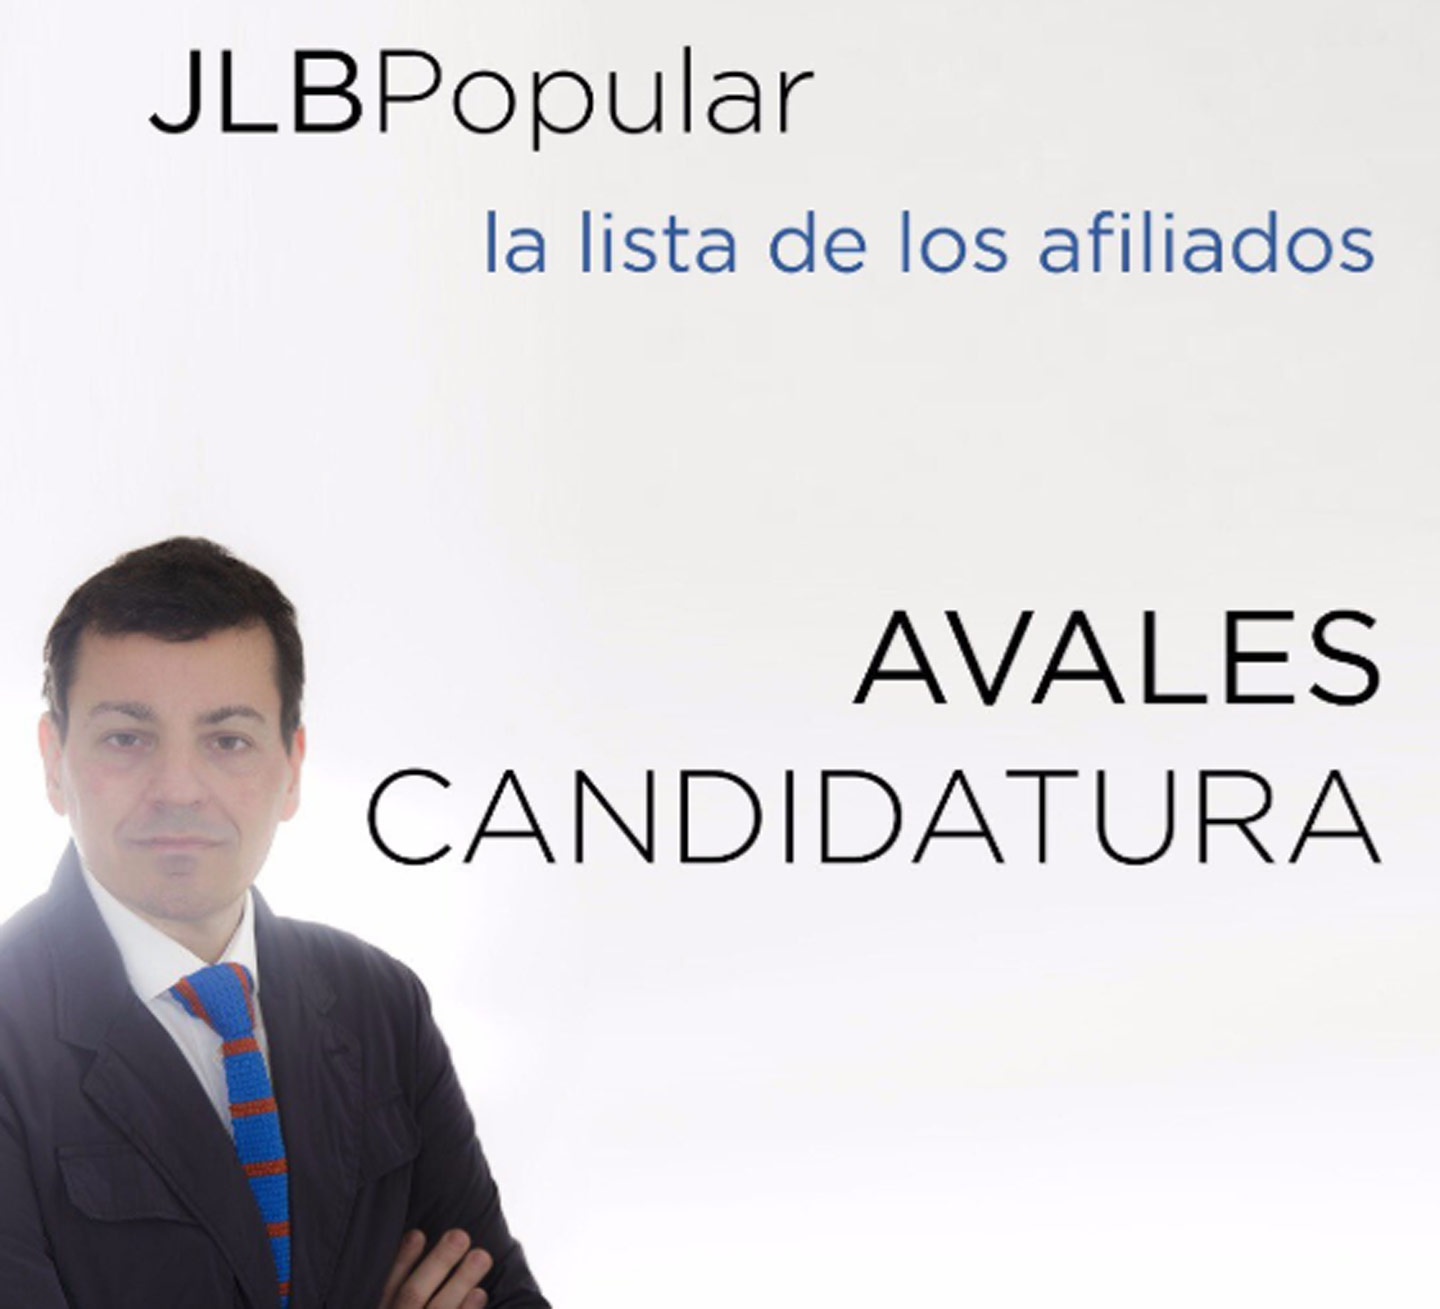 El valenciano José Luis Bayo se presenta como el candidato con las "manos limpias"